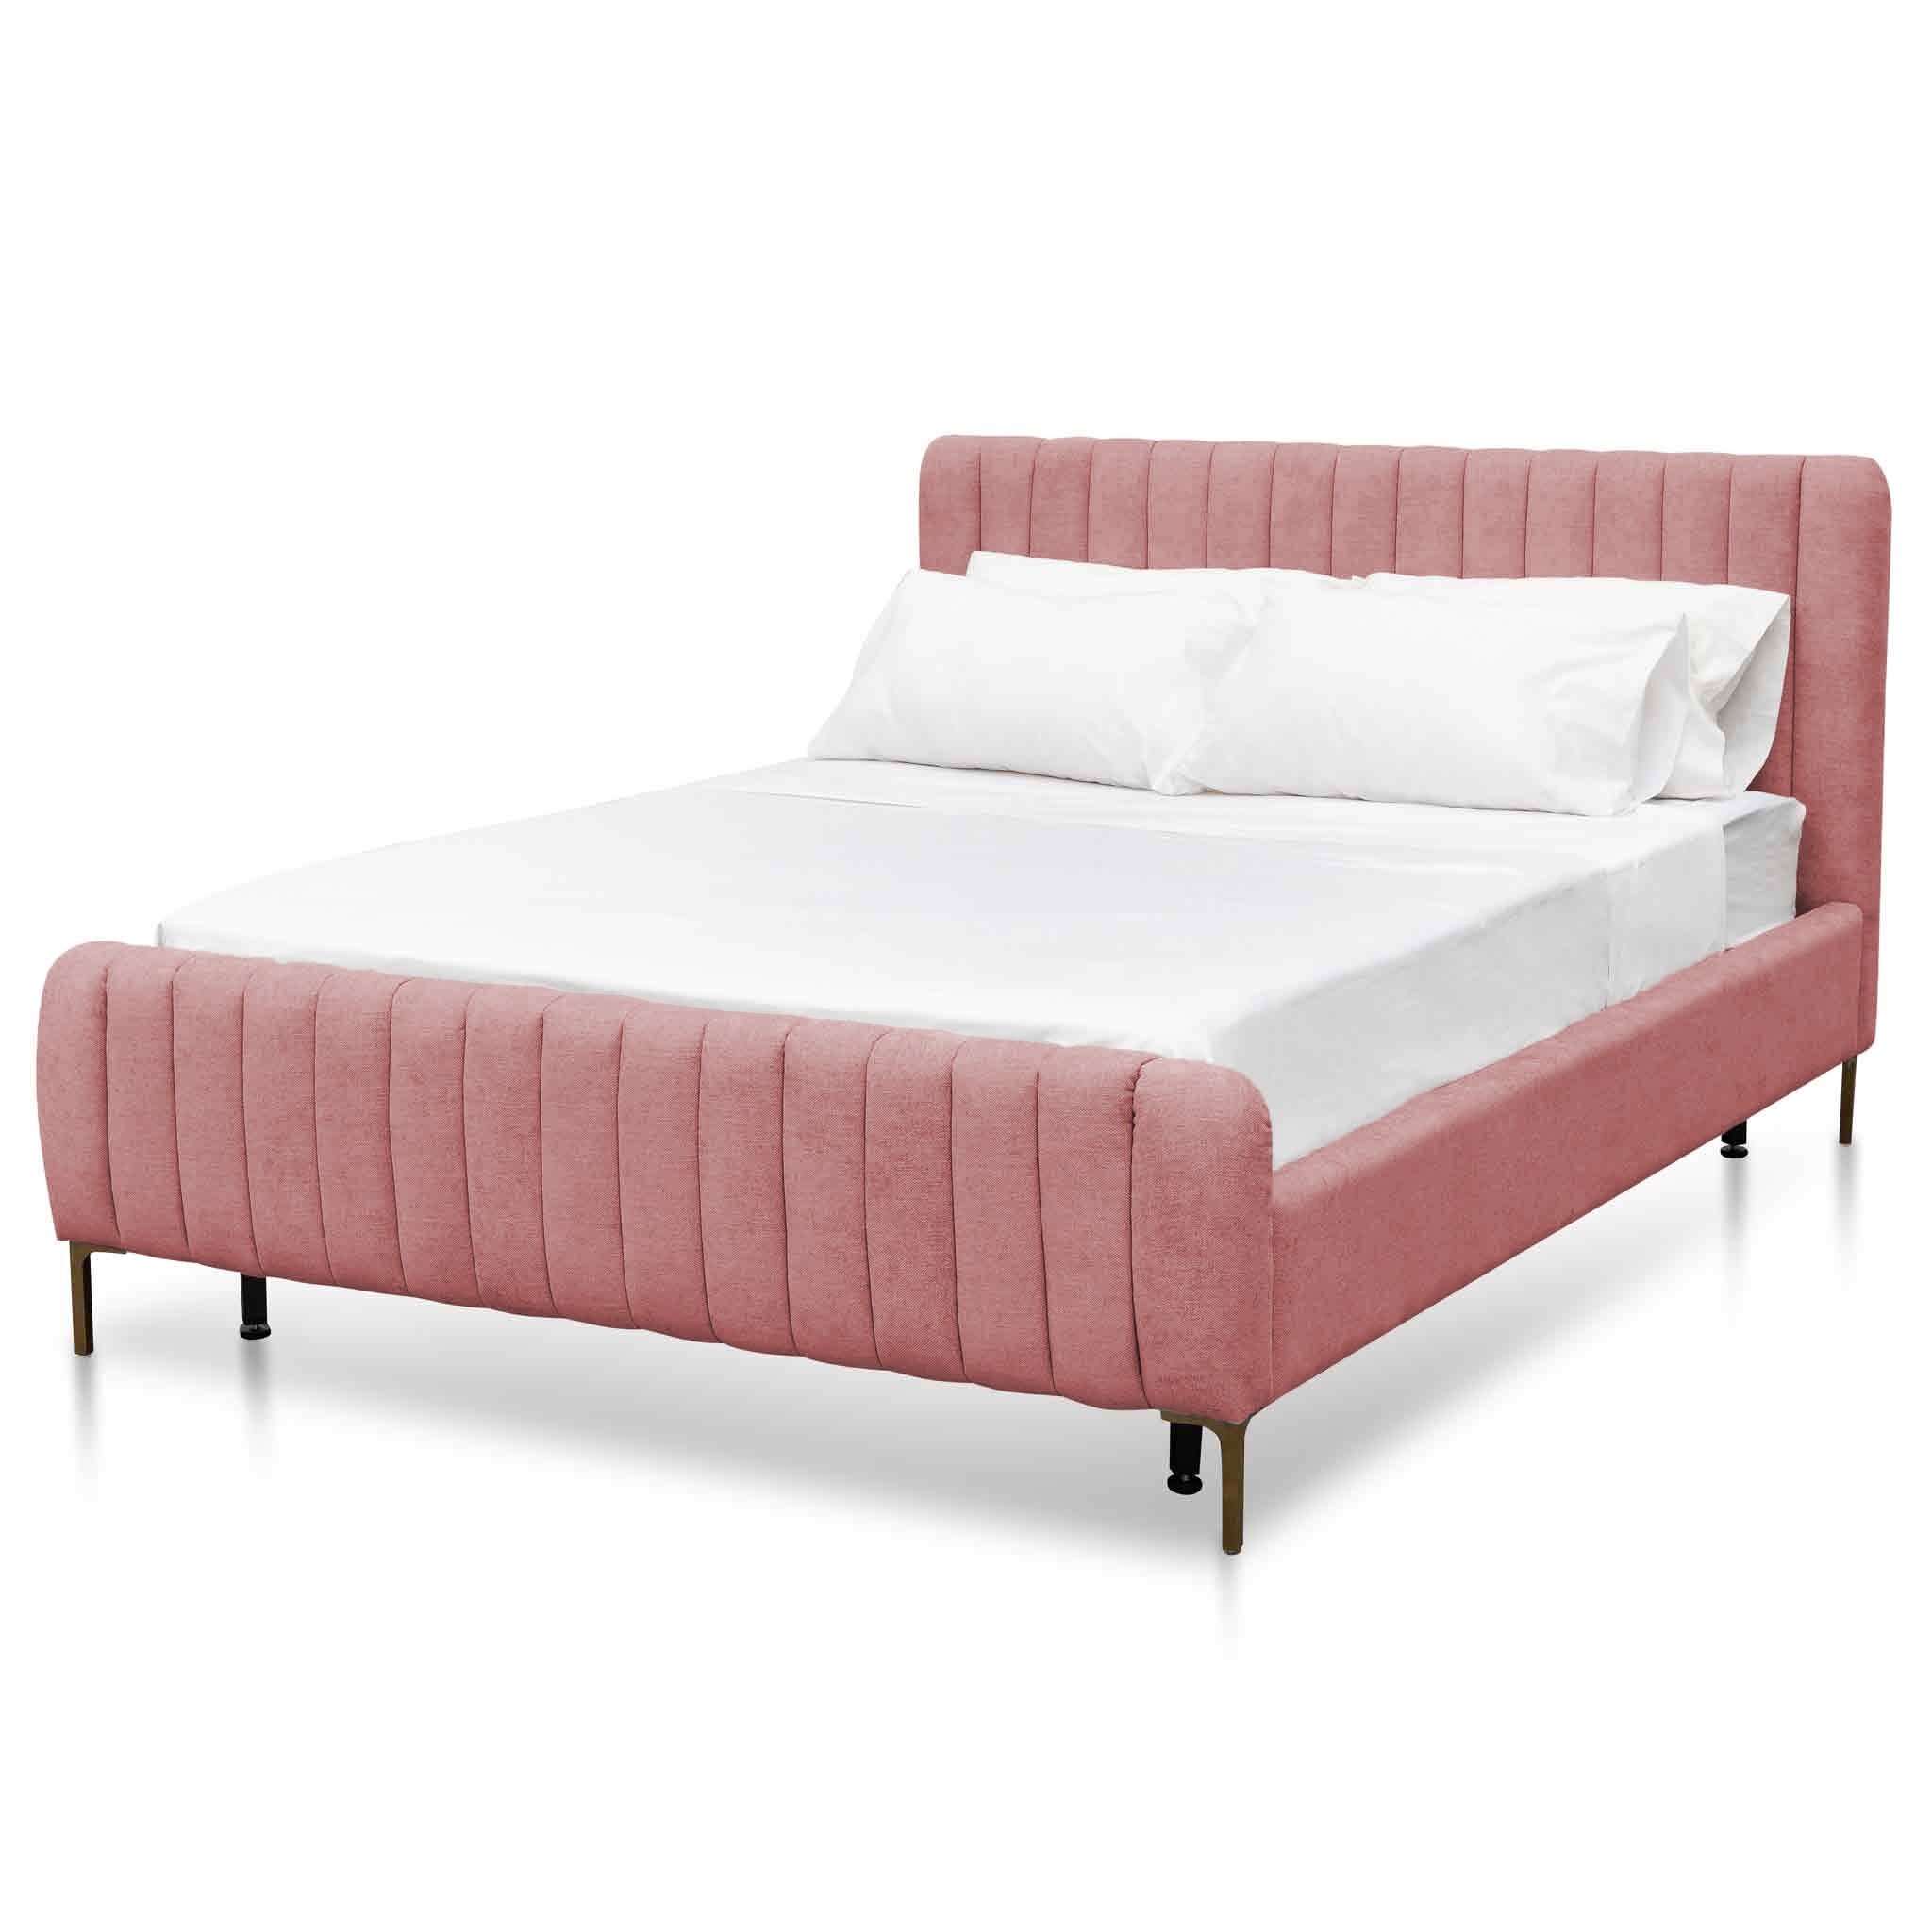 Kai Queen Bed Frame - Blush Peach Velvet - Beds